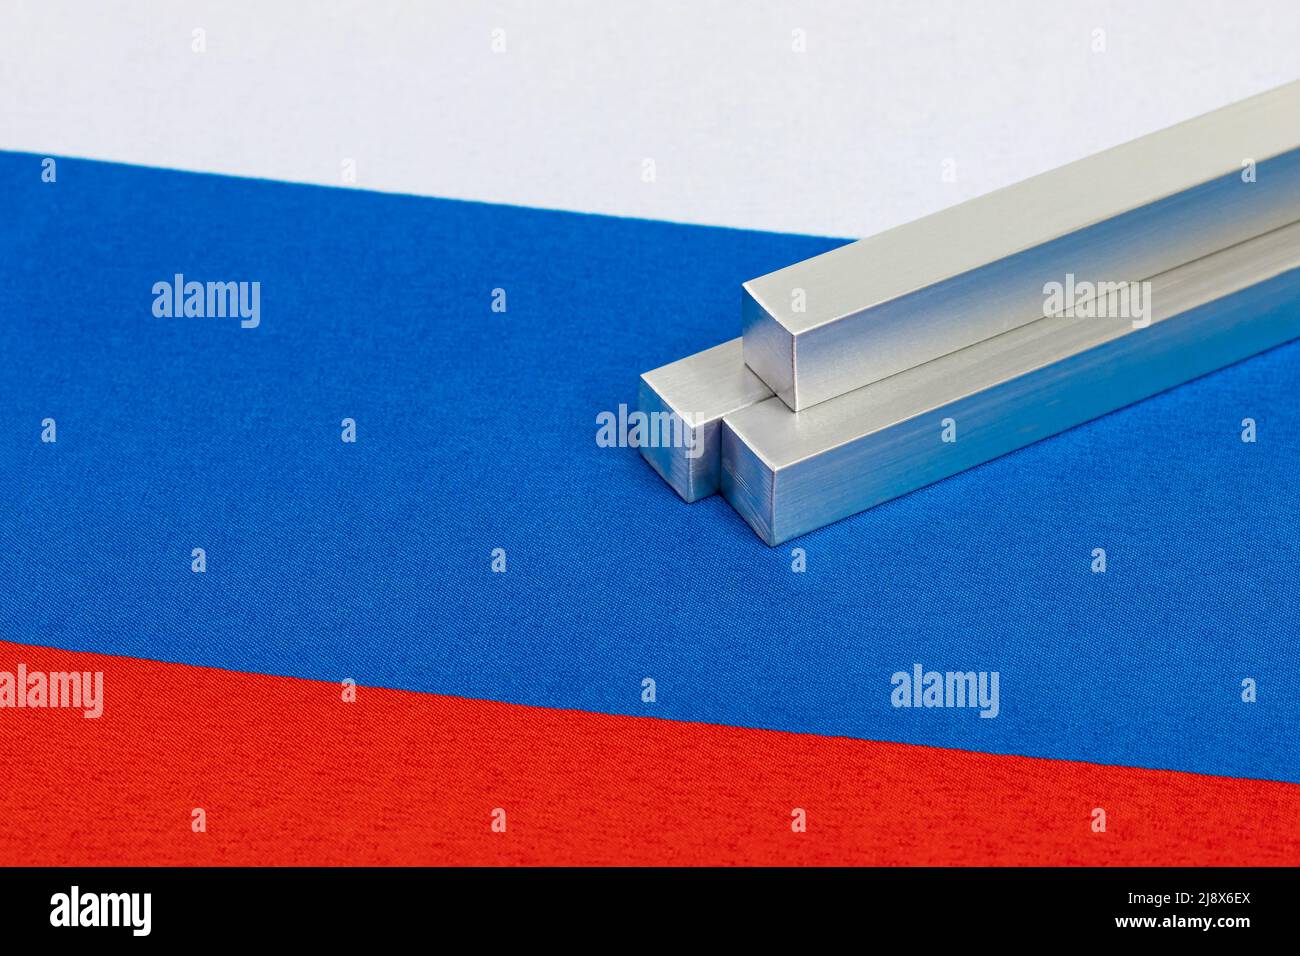 Material metálico de aluminio con bandera rusa. Exportación, comercio e industria de aluminio ruso. Foto de stock